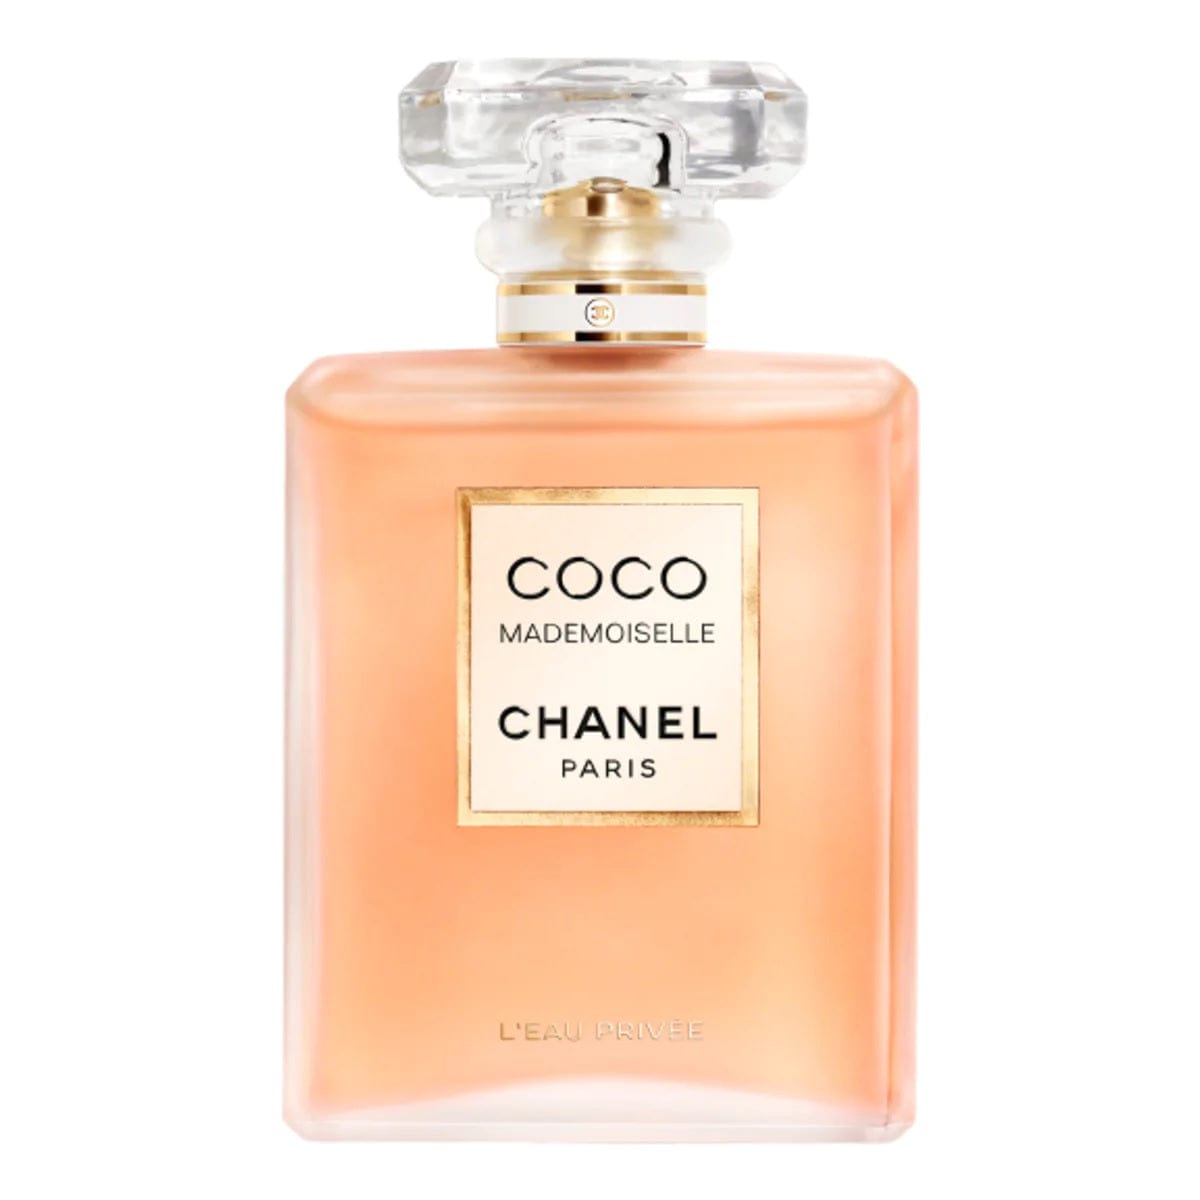 Chanel Bleu De Chanel Eau De Parfum Refillable Travel Spray 3x20ml